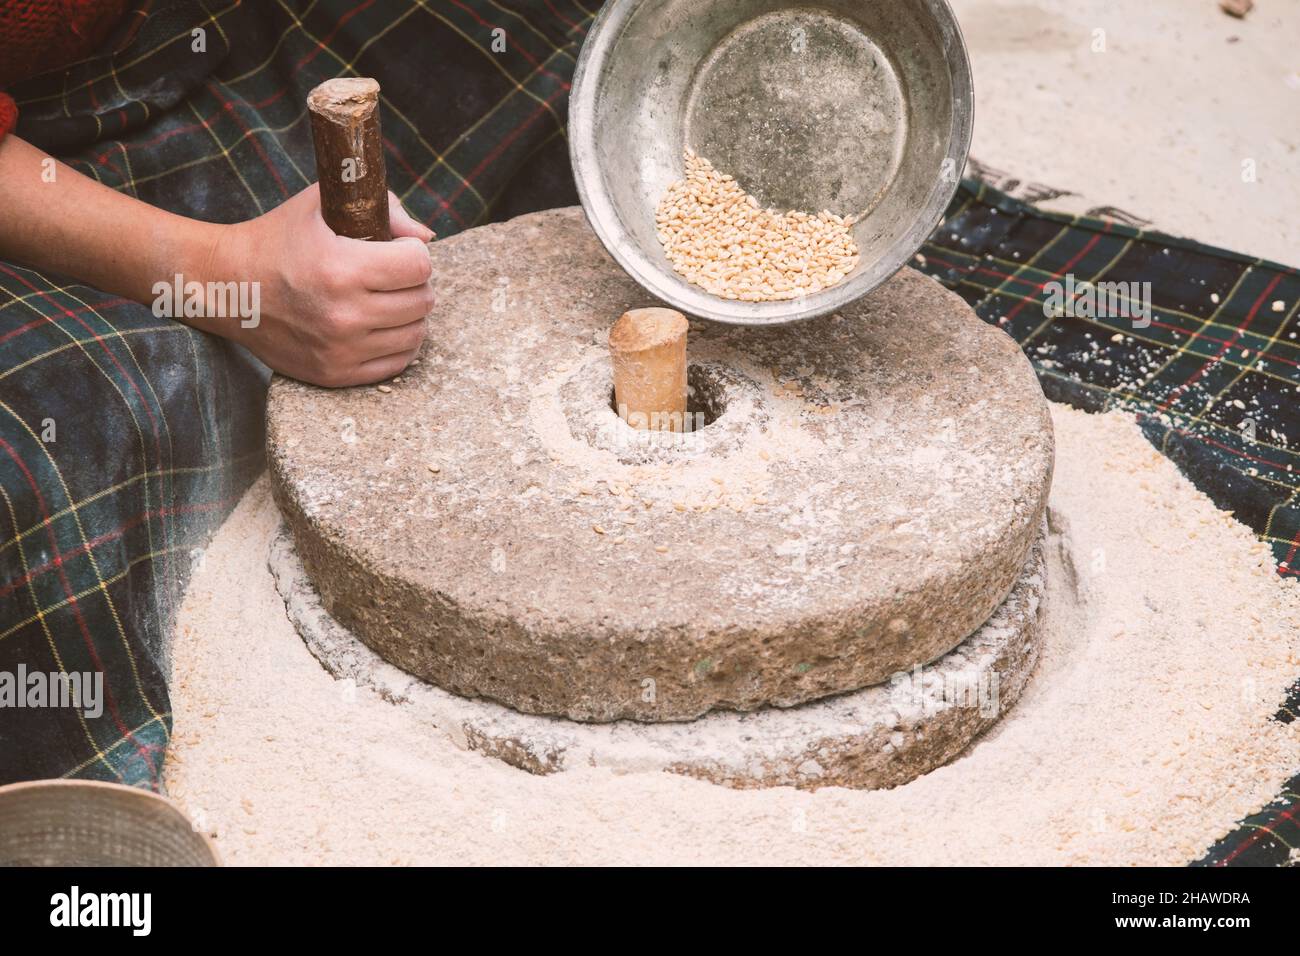 El antiguo molino de mano o piedra de la harina, muele el grano en harina.  Piedras de molienda hechas a mano antiguas. La anciana está moliendo harina  con lo tradicional Fotografía de